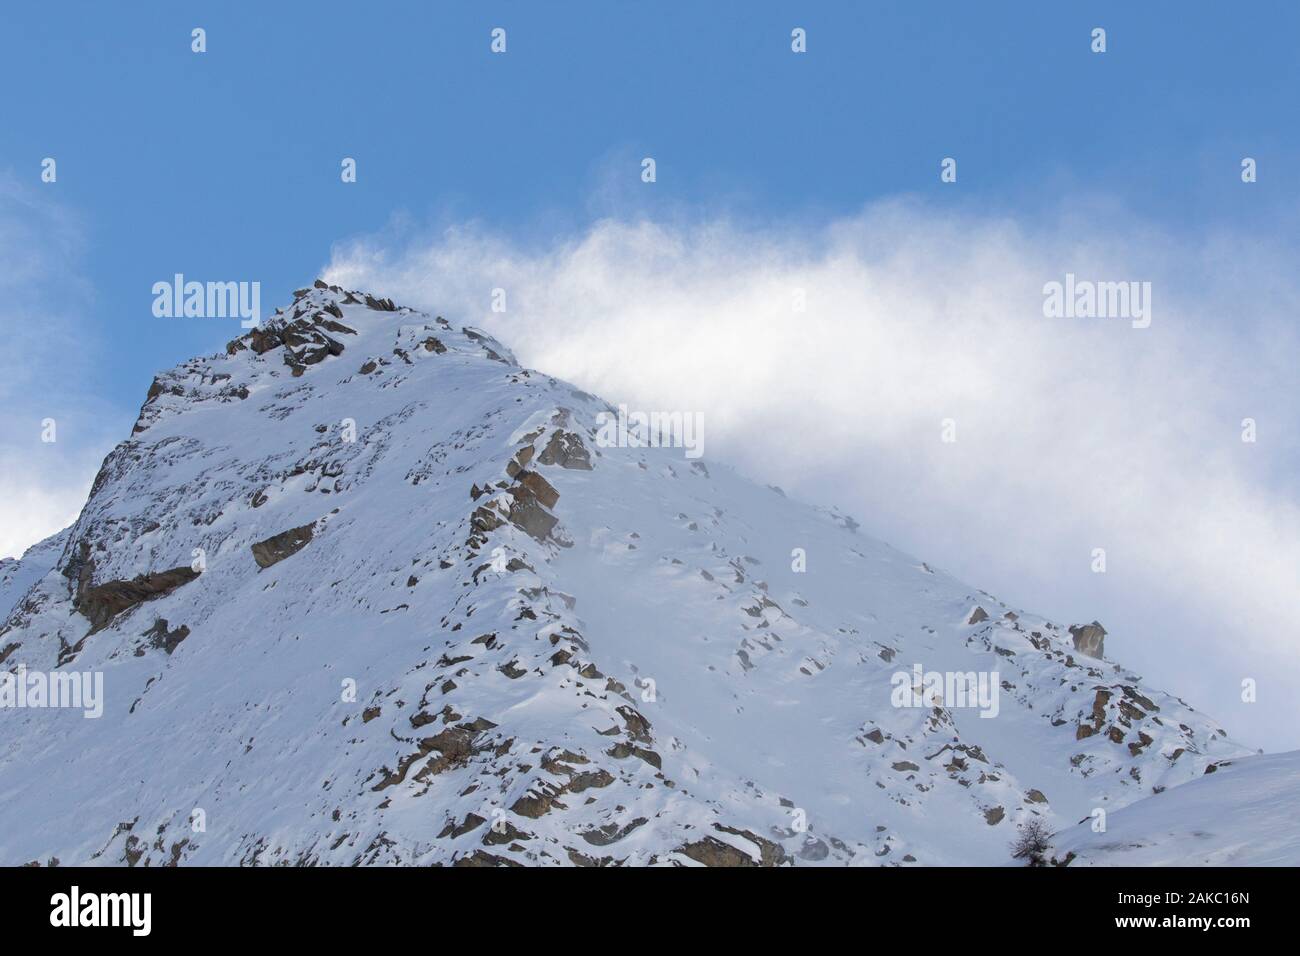 Coperta di neve montagna / pinnacle cima dell'Arolley in inverno, nel massiccio del Gran Paradiso delle Alpi Graian, Valle d'Aosta, Italia Foto Stock